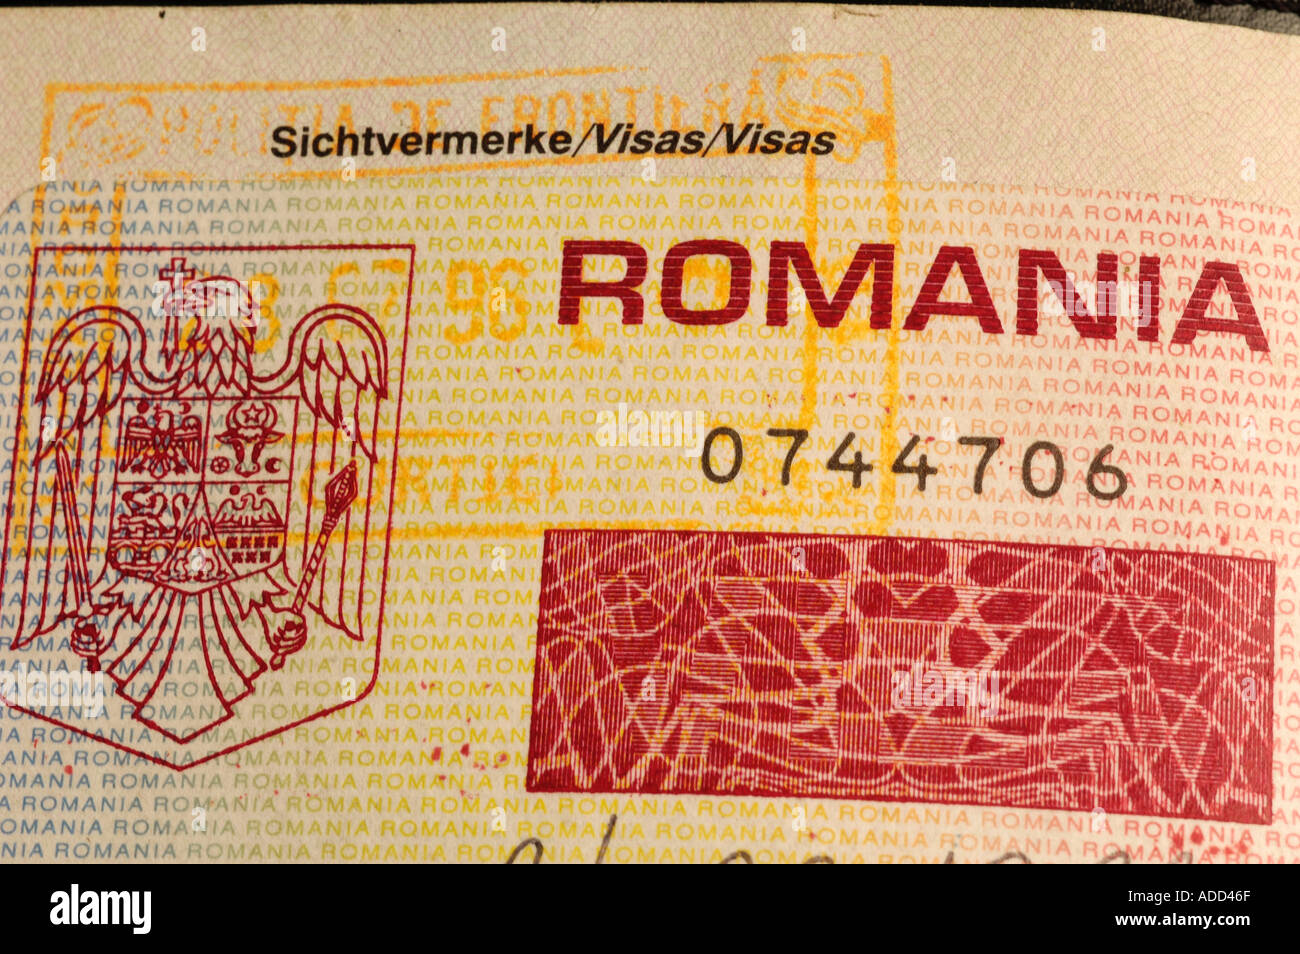 Formulaire de passeport avec visa Roumanie Photo Stock - Alamy